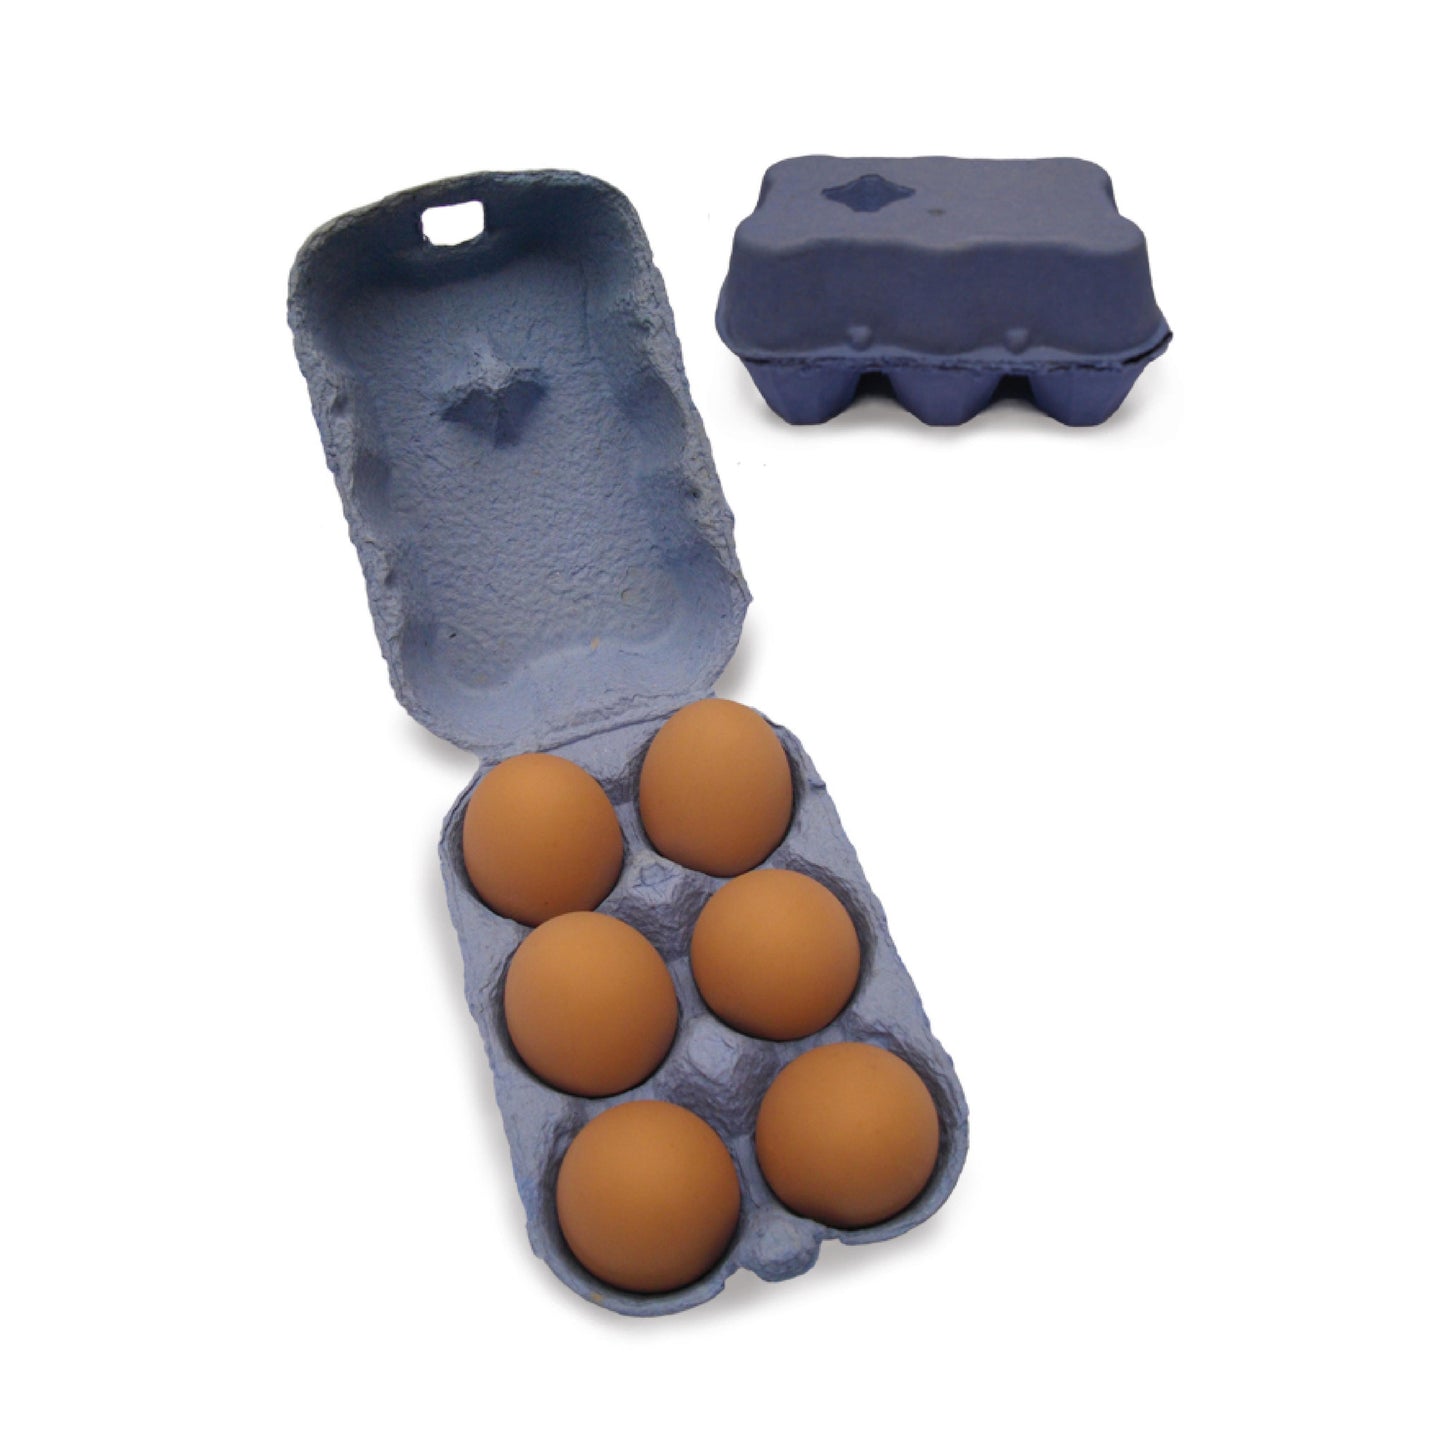 BHWT 6-Egg Boxes